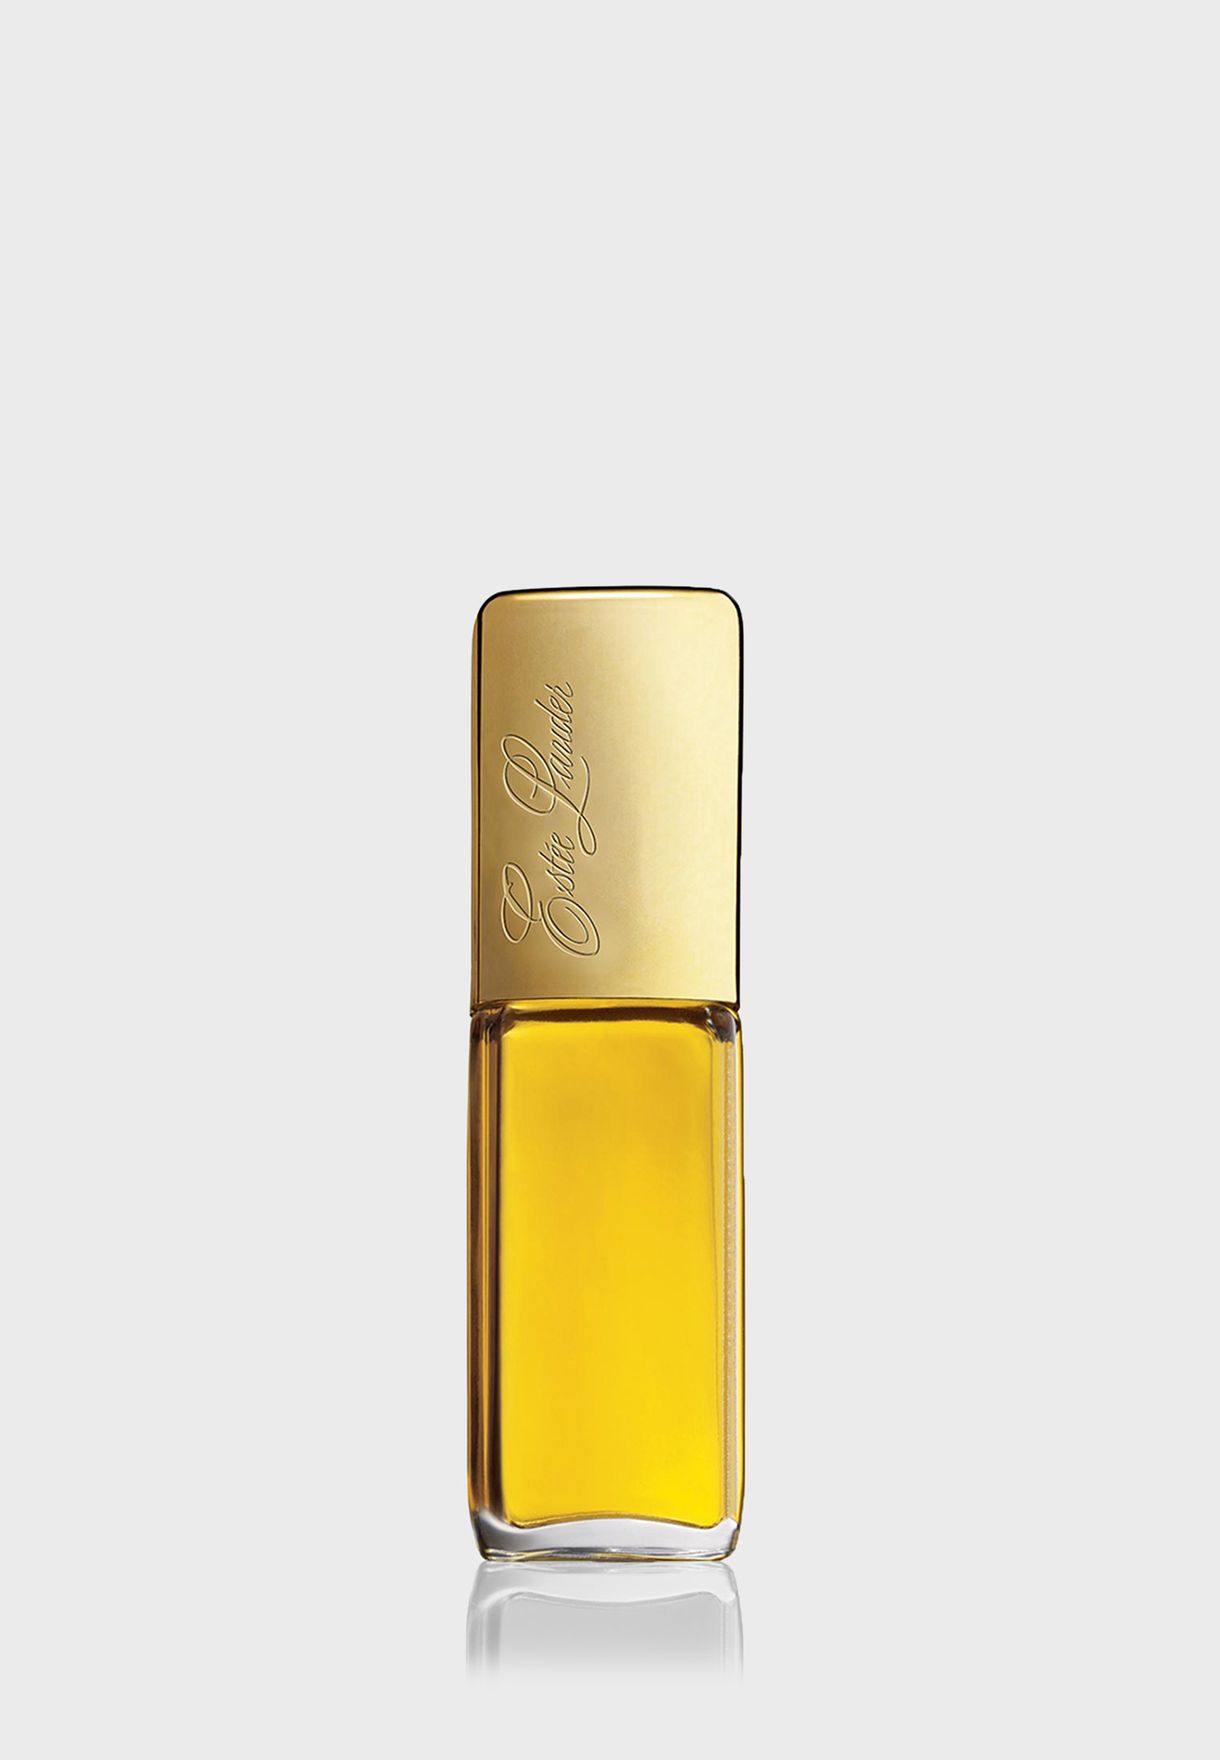 Private Collection Eau de Parfum 50ml